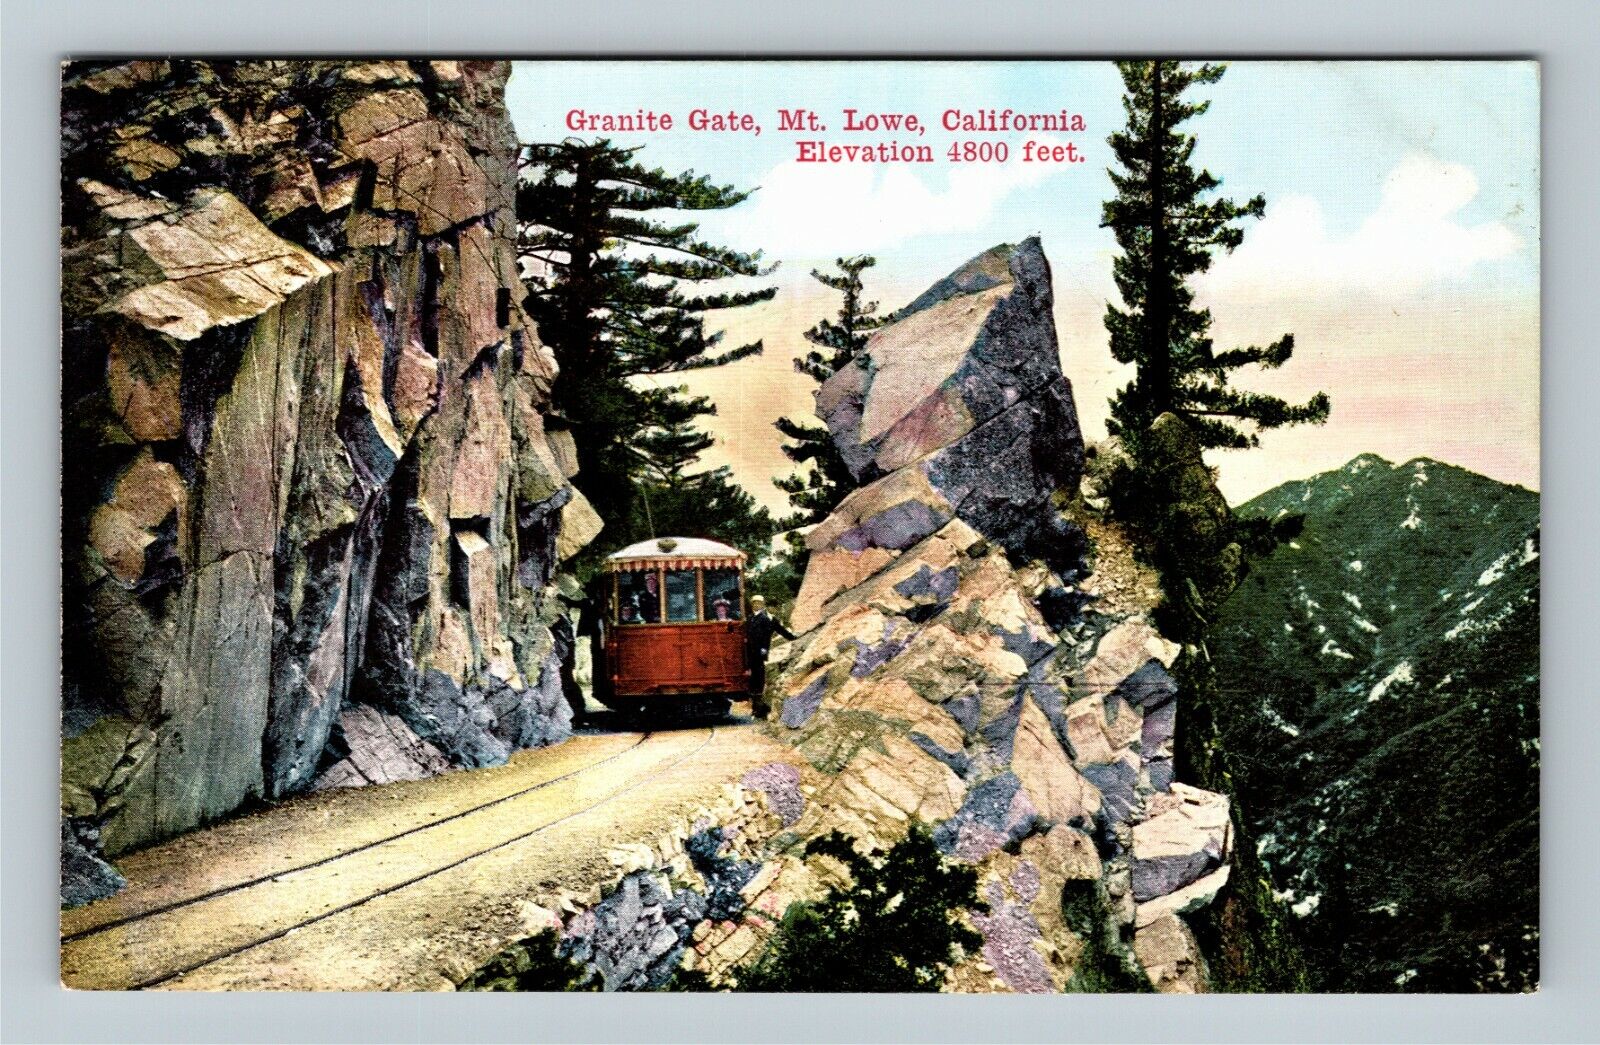 Mt. Lowe CA, Granite Gate Railway Mount Lowe California c1910 Vintage Postcard